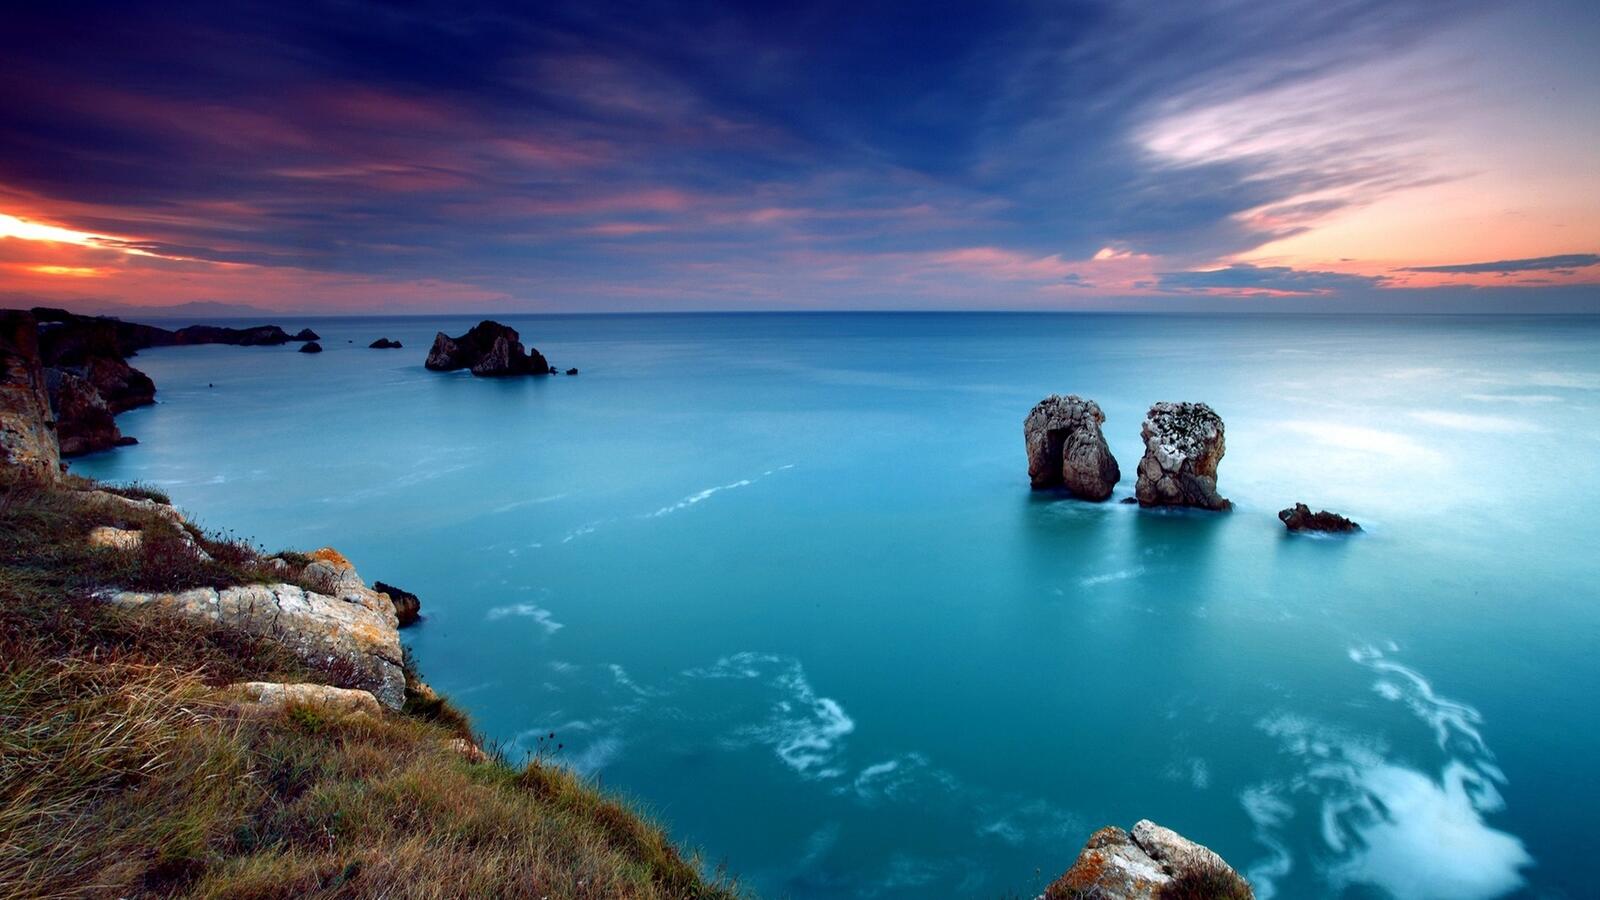 Бесплатное фото Красивый закат с видом на море